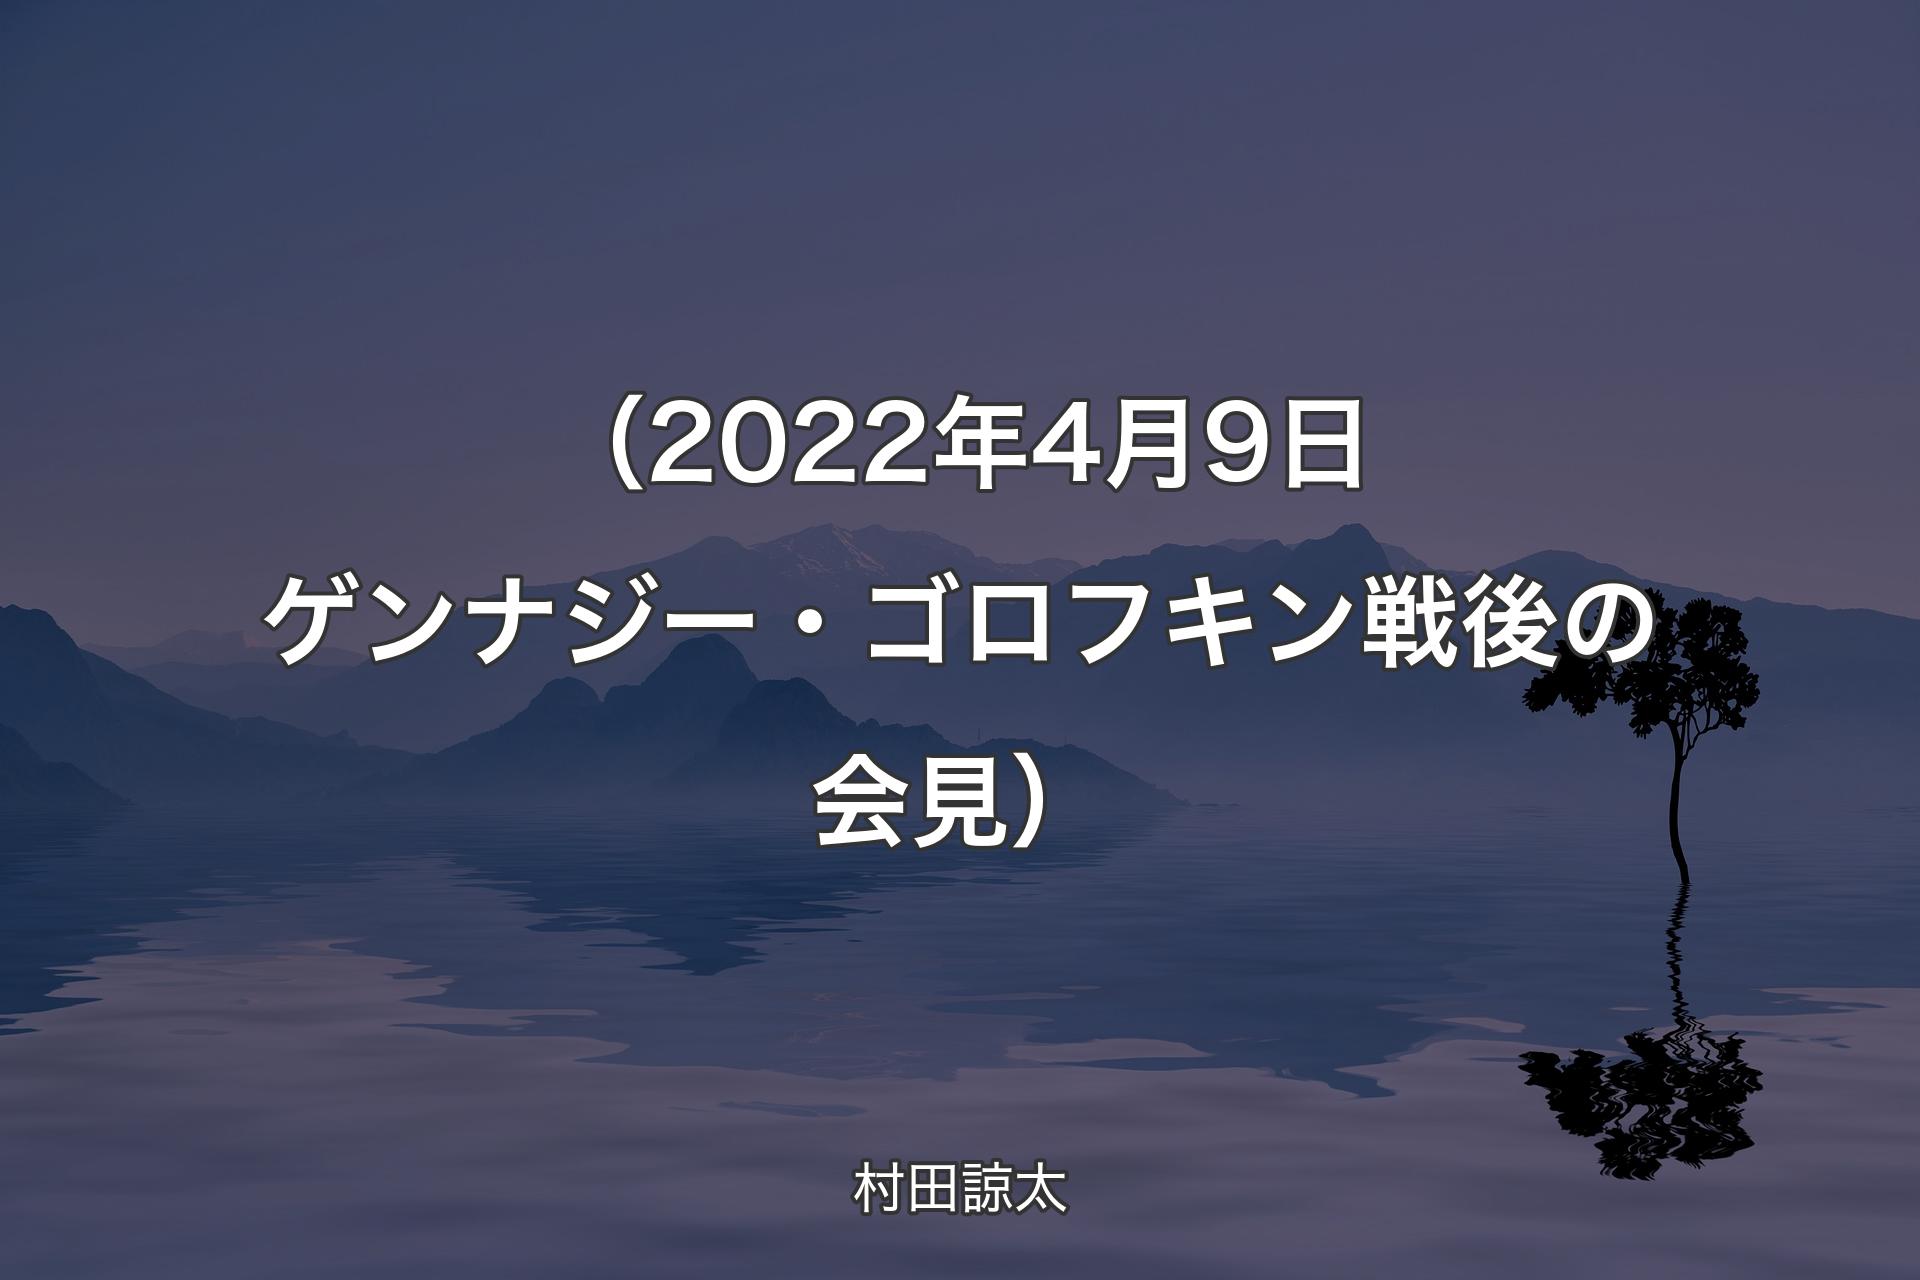 【背景4】（2022年4月9日 ゲンナジー・ゴロフキン戦後の会見） - 村田諒太